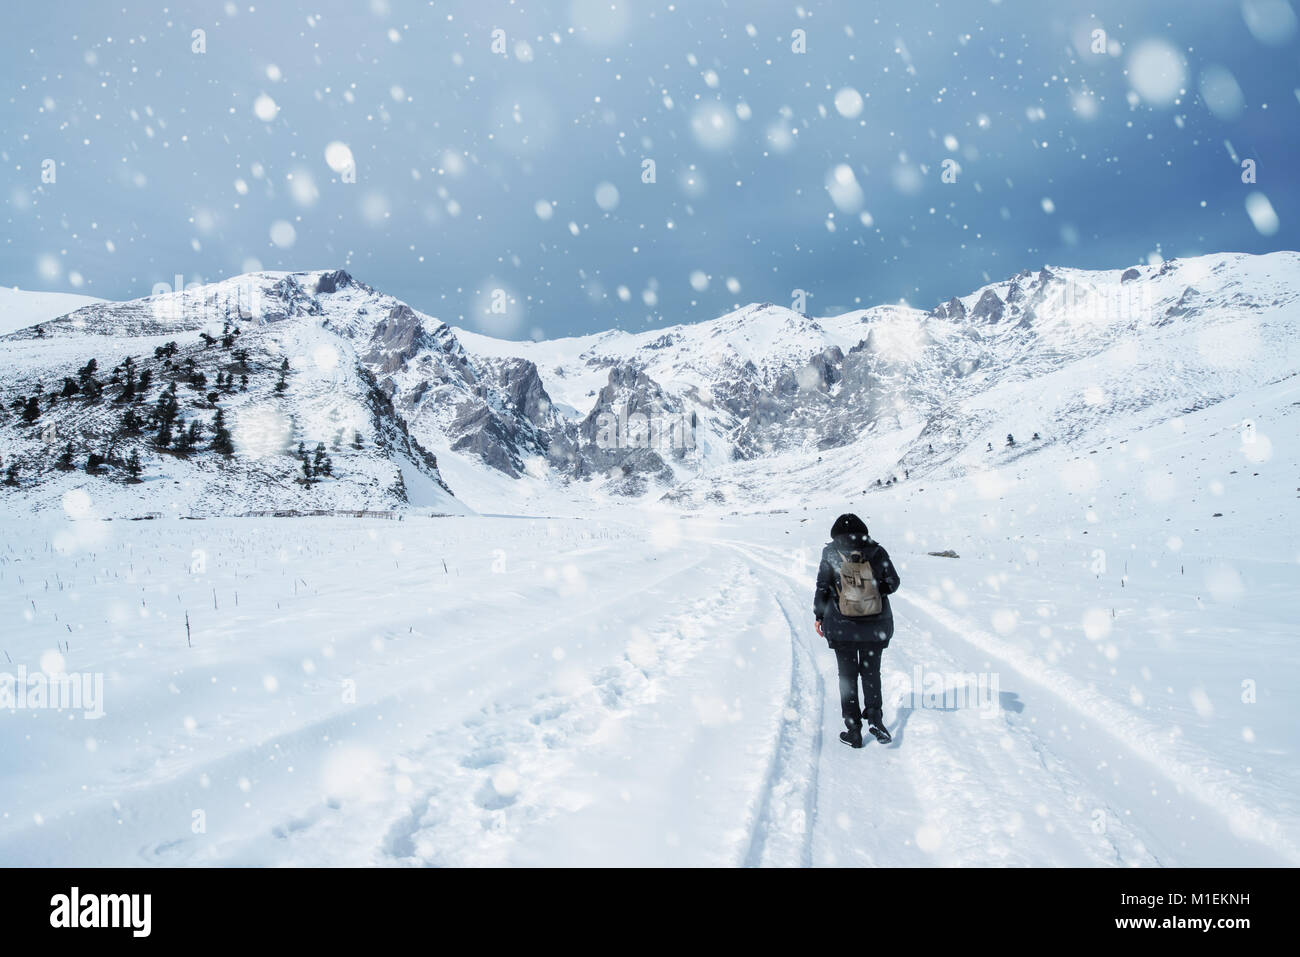 Personne à s'éloigner vers le bas une route d'hiver enneigé par fiel dans un paysage pittoresque des saisons conceptuel Banque D'Images